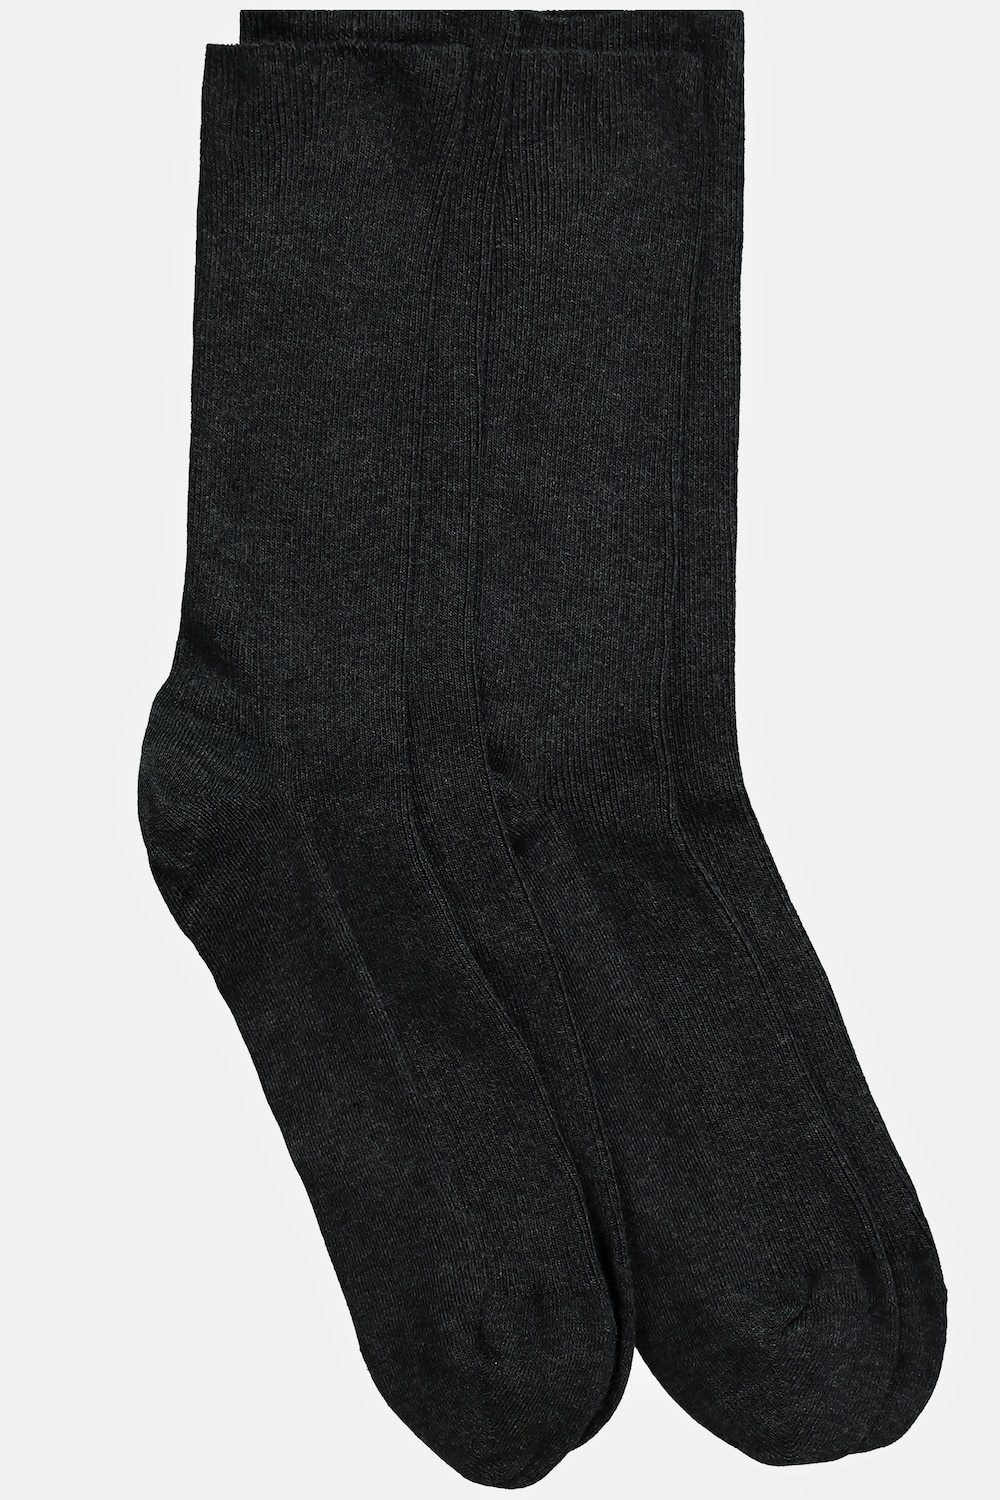 Große Größen JP1880 Socken, Herren, grau, Größe: 43-46, Baumwolle/Synthetische Fasern, JP1880 von JP1880